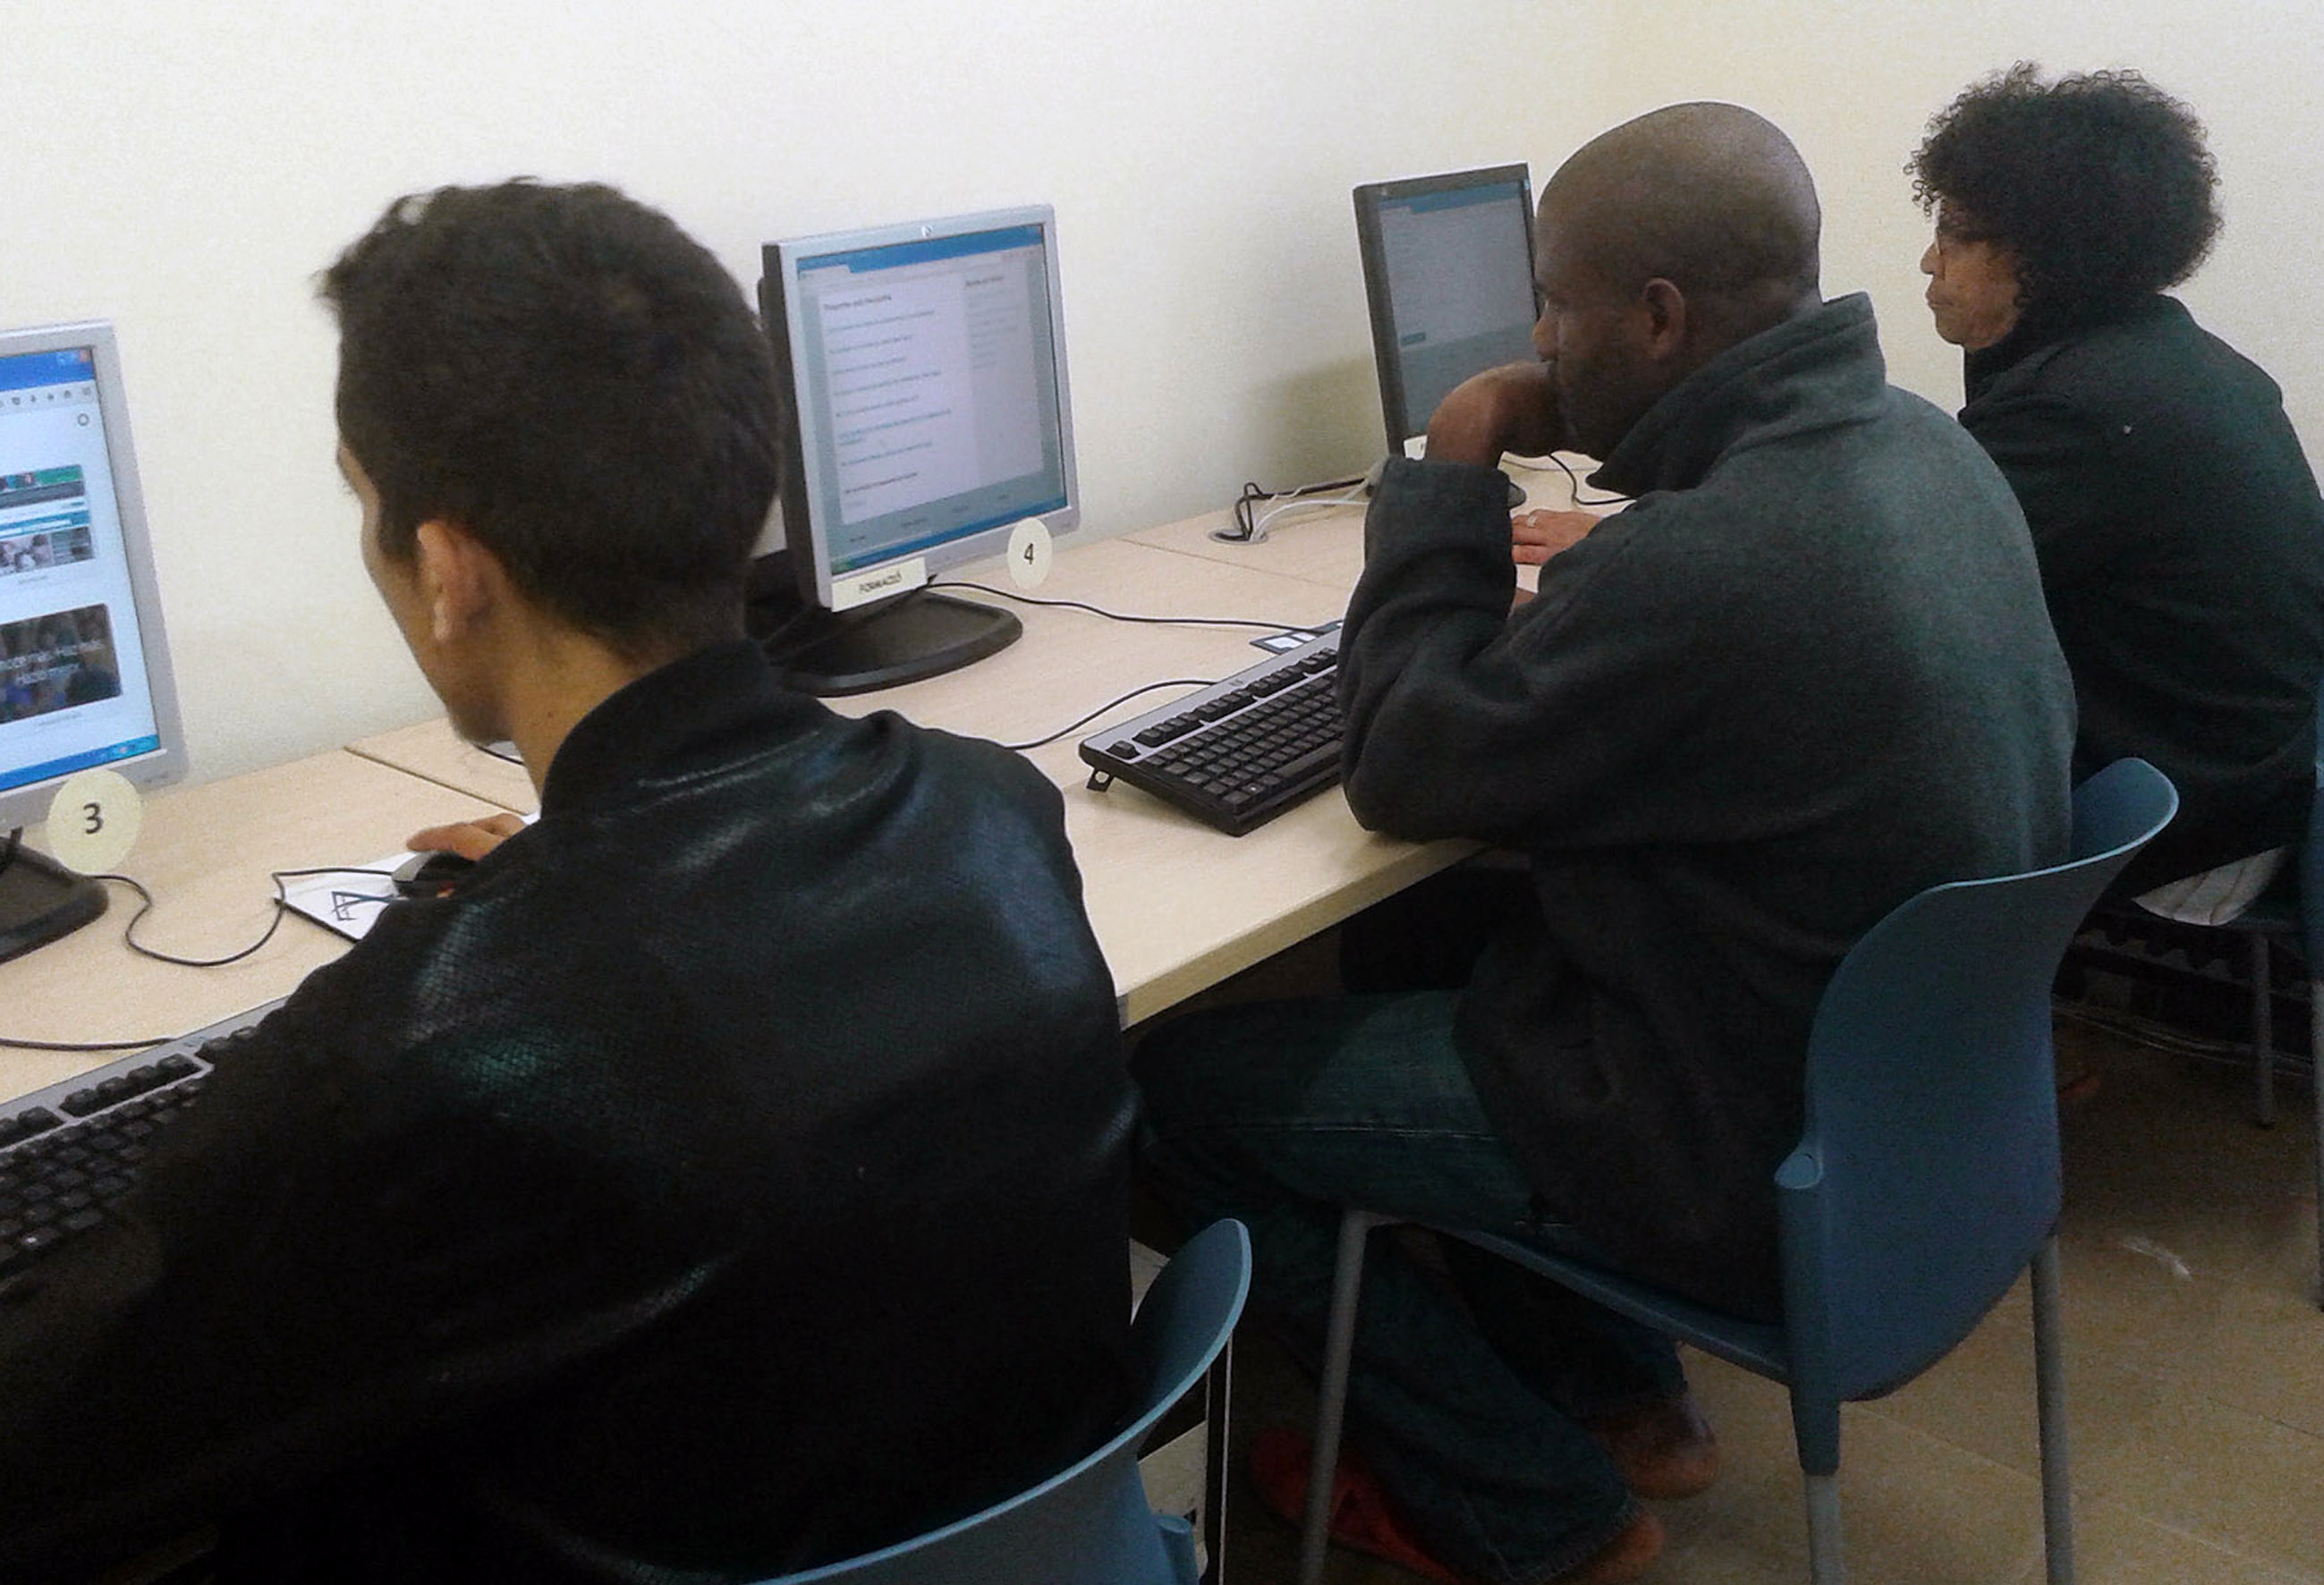 Tres participants del taller d'inserció laboral utilitzant ordinadors